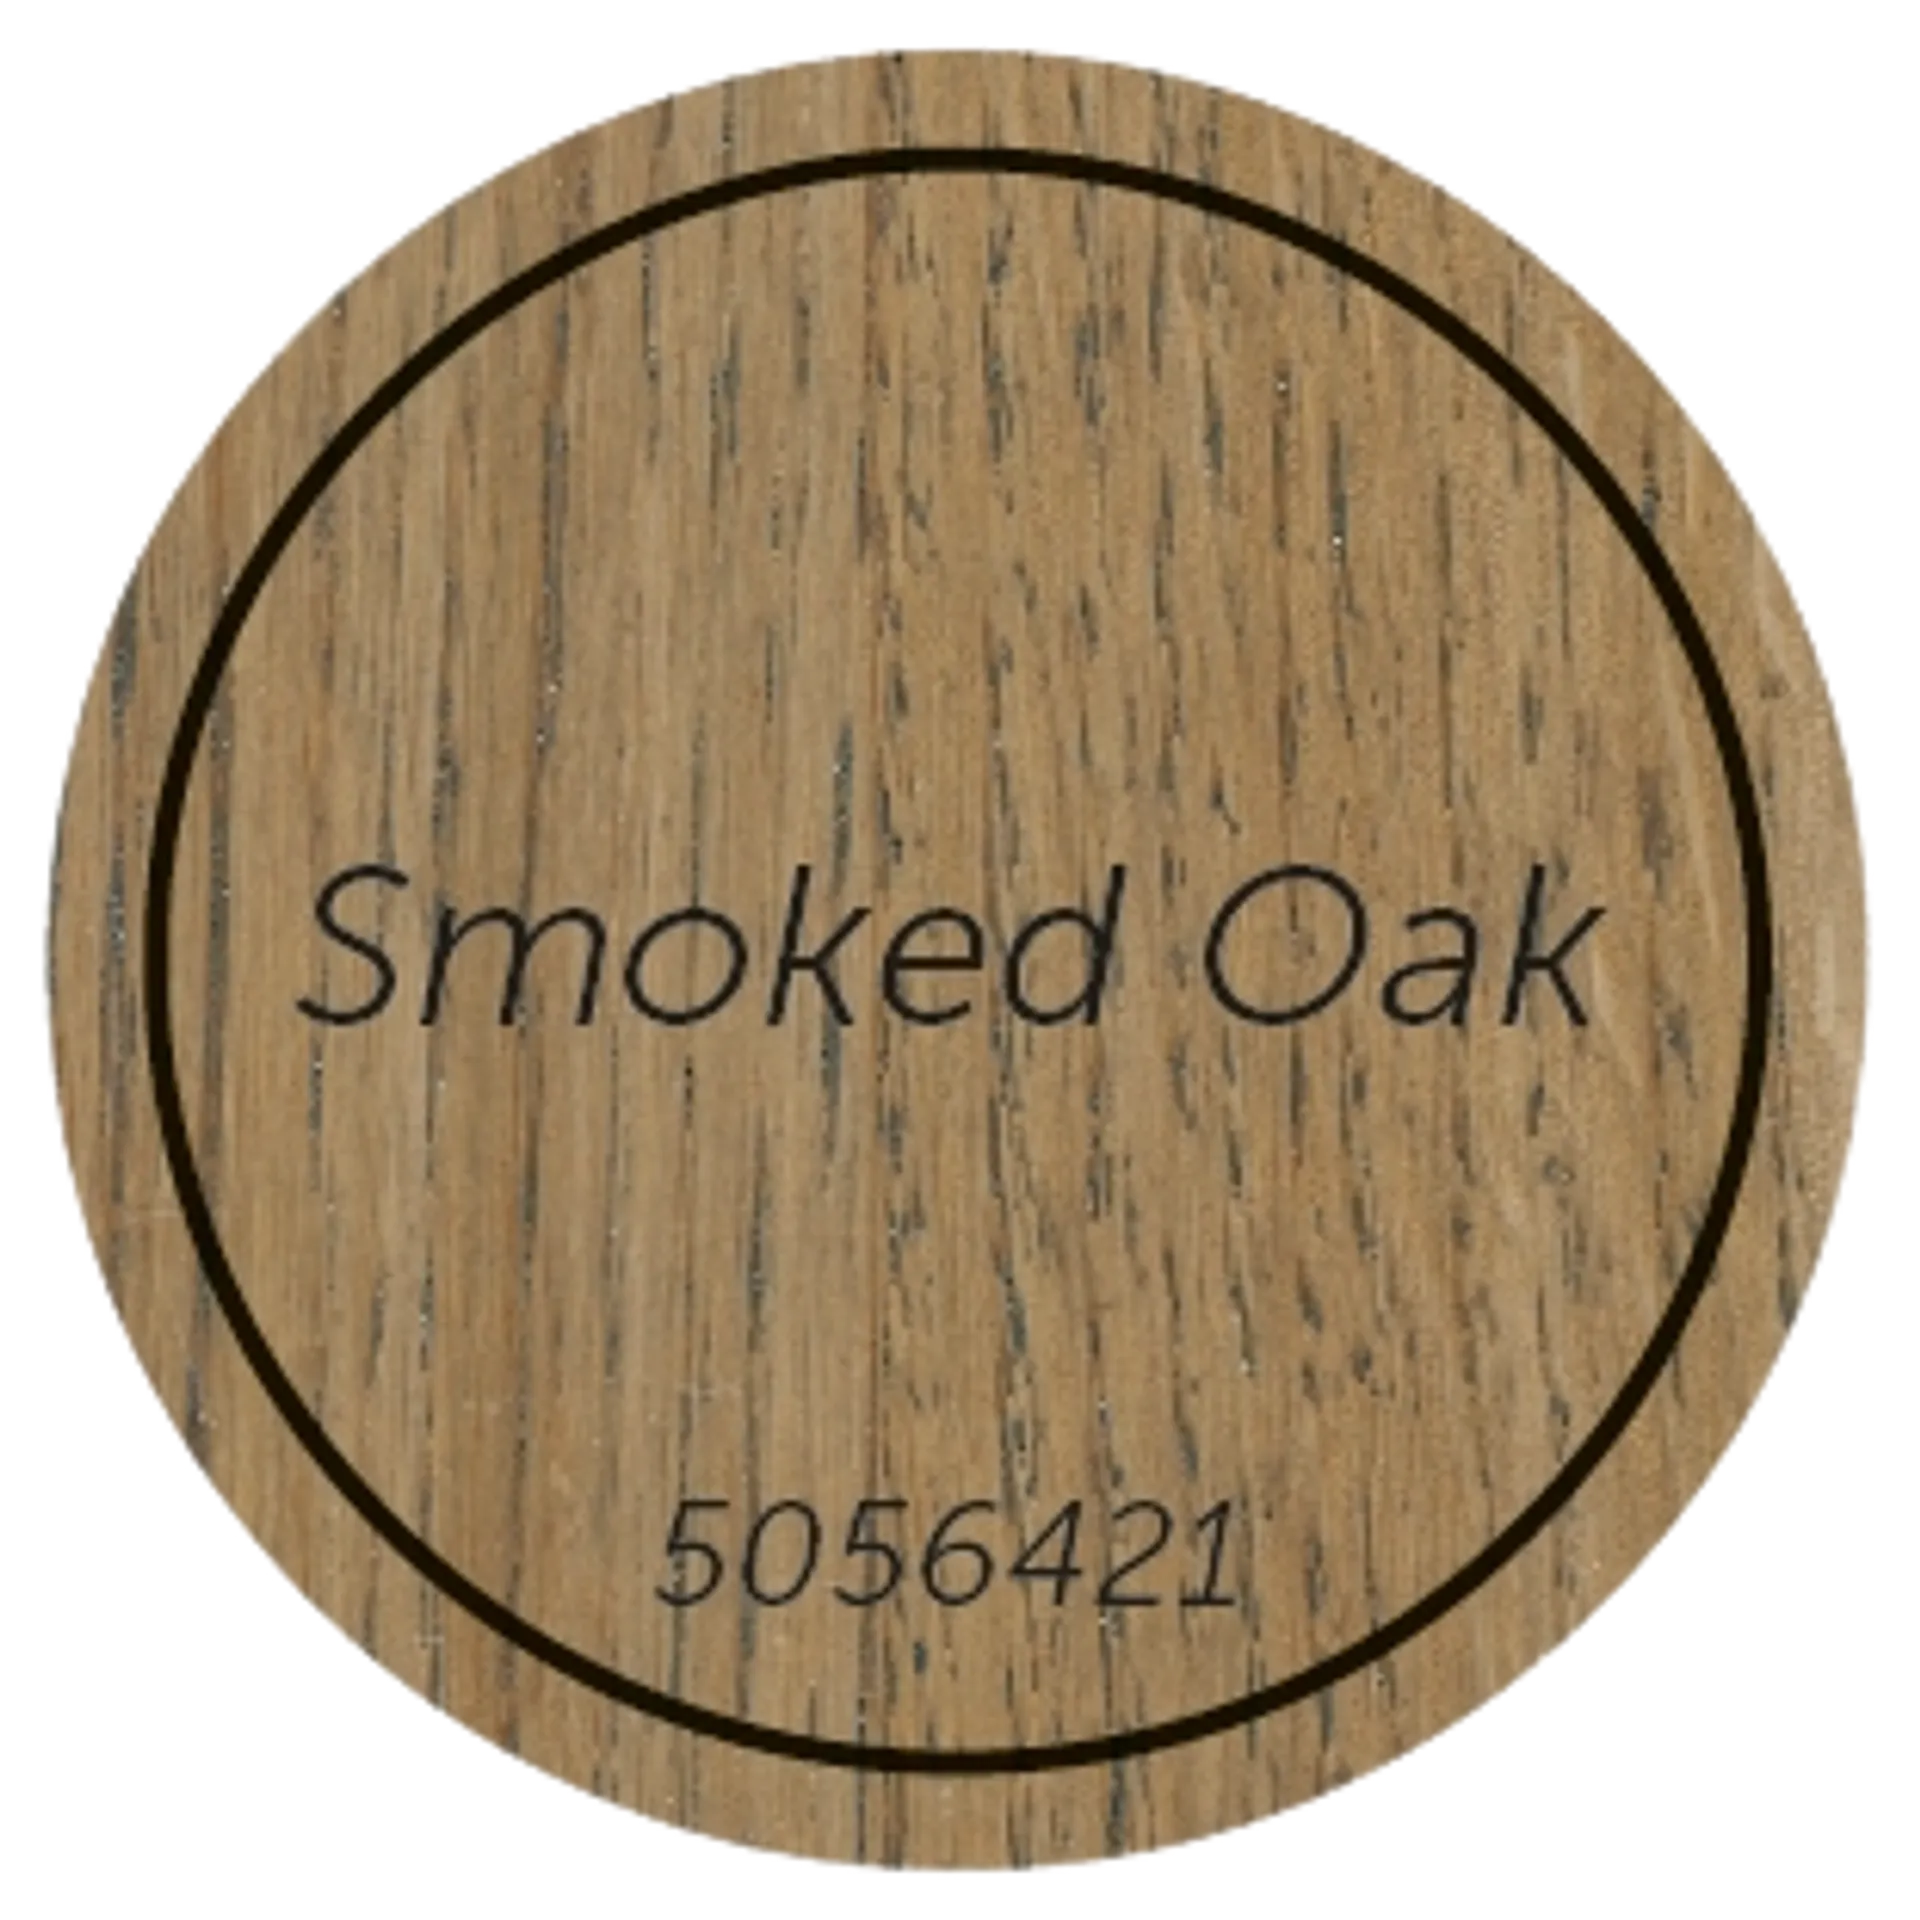 Liberon Kova Öljyvaha 250ml Smoked Oak - 2